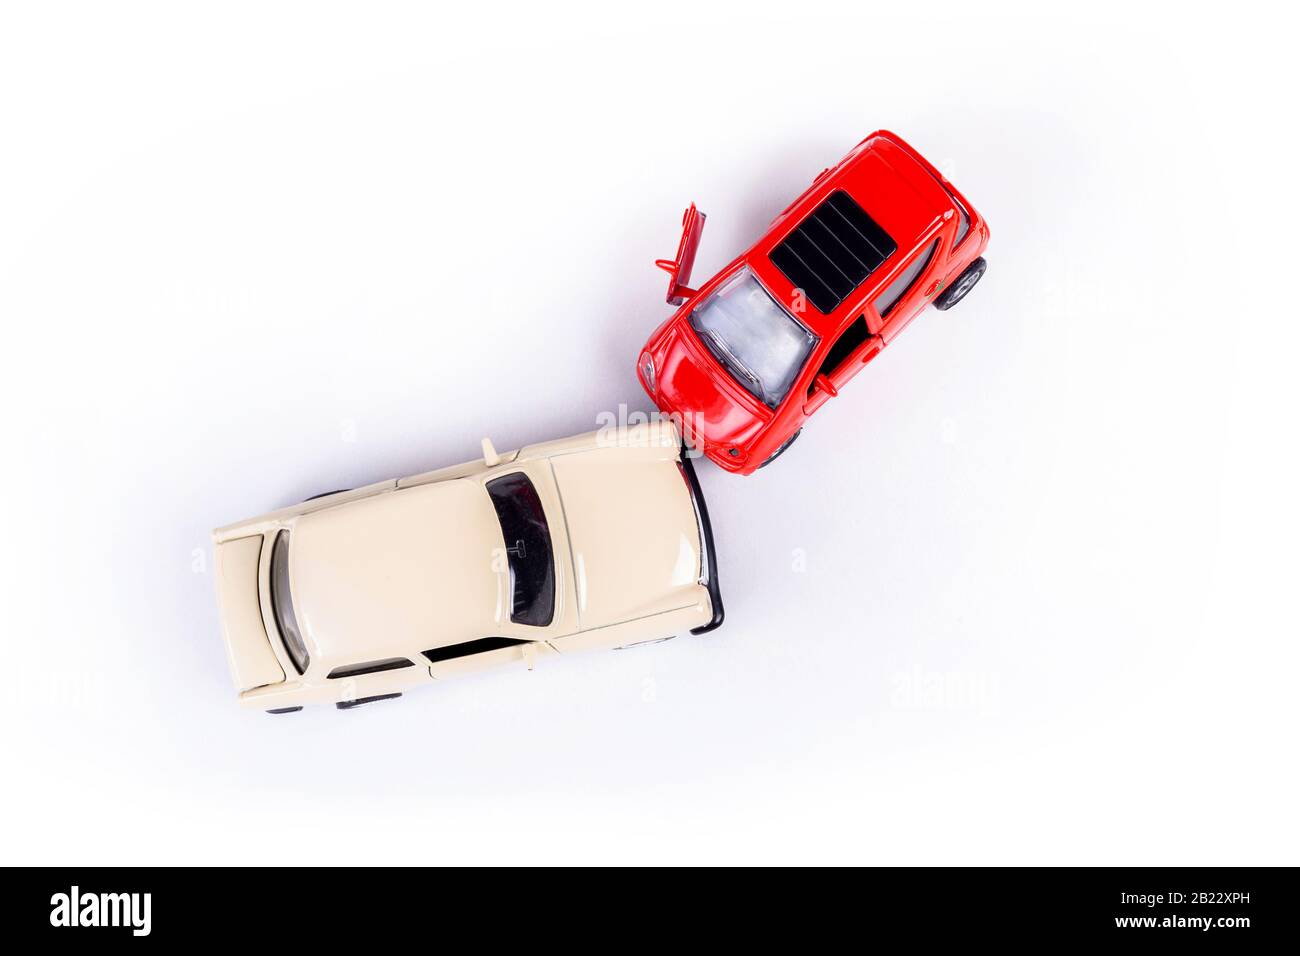 Spielzeugautos Auf Unfallaussage Stockfoto - Bild von fülle, automobil:  102545014